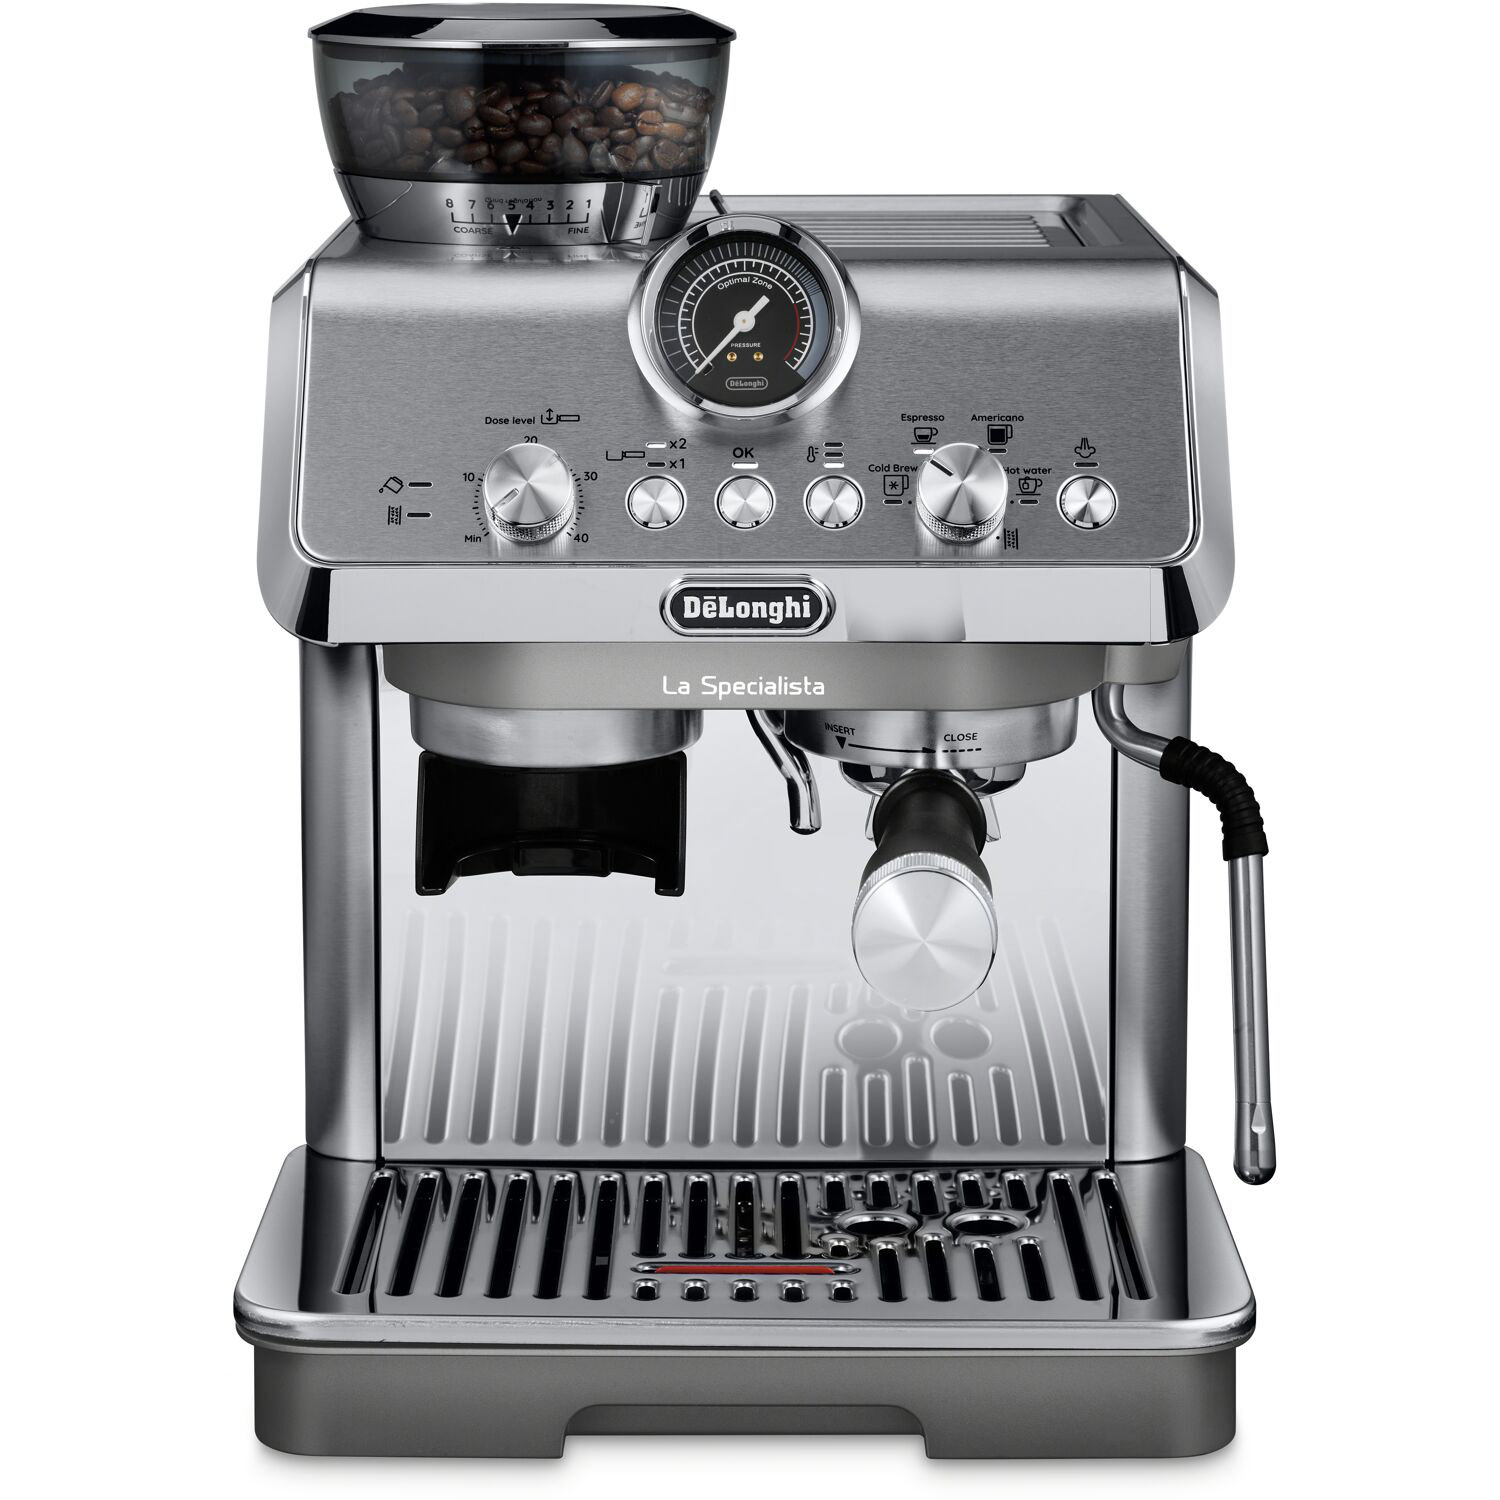 https://assets.wfcdn.com/im/37847887/compr-r85/2634/263472021/delonghi-la-specialista-arte-evo-espresso-machine-with-cold-brew.jpg